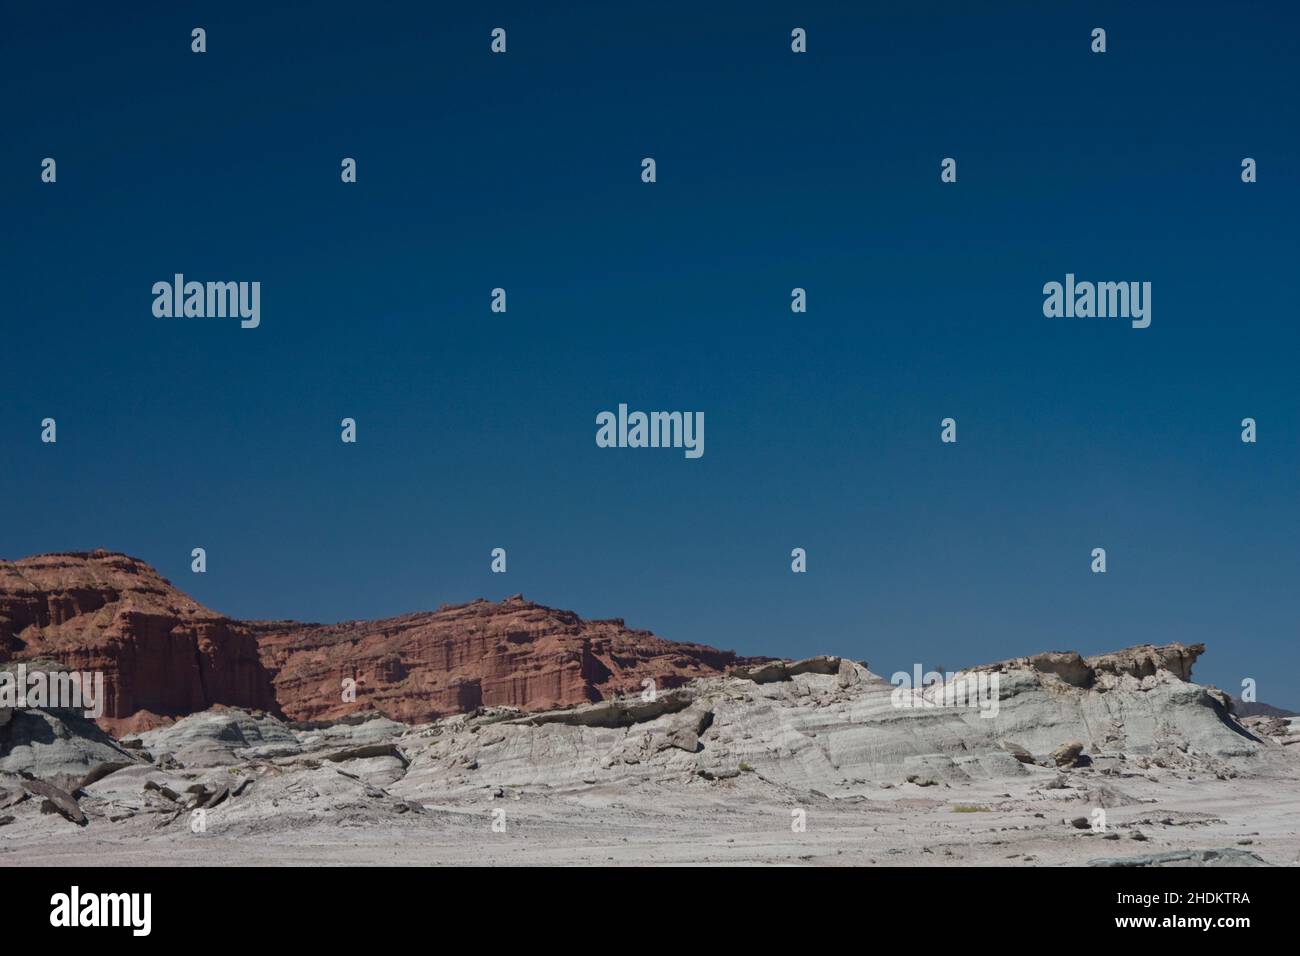 Scatto di un enorme muro di roccia scheggiato in un deserto con lo sfondo di un cielo blu Foto Stock